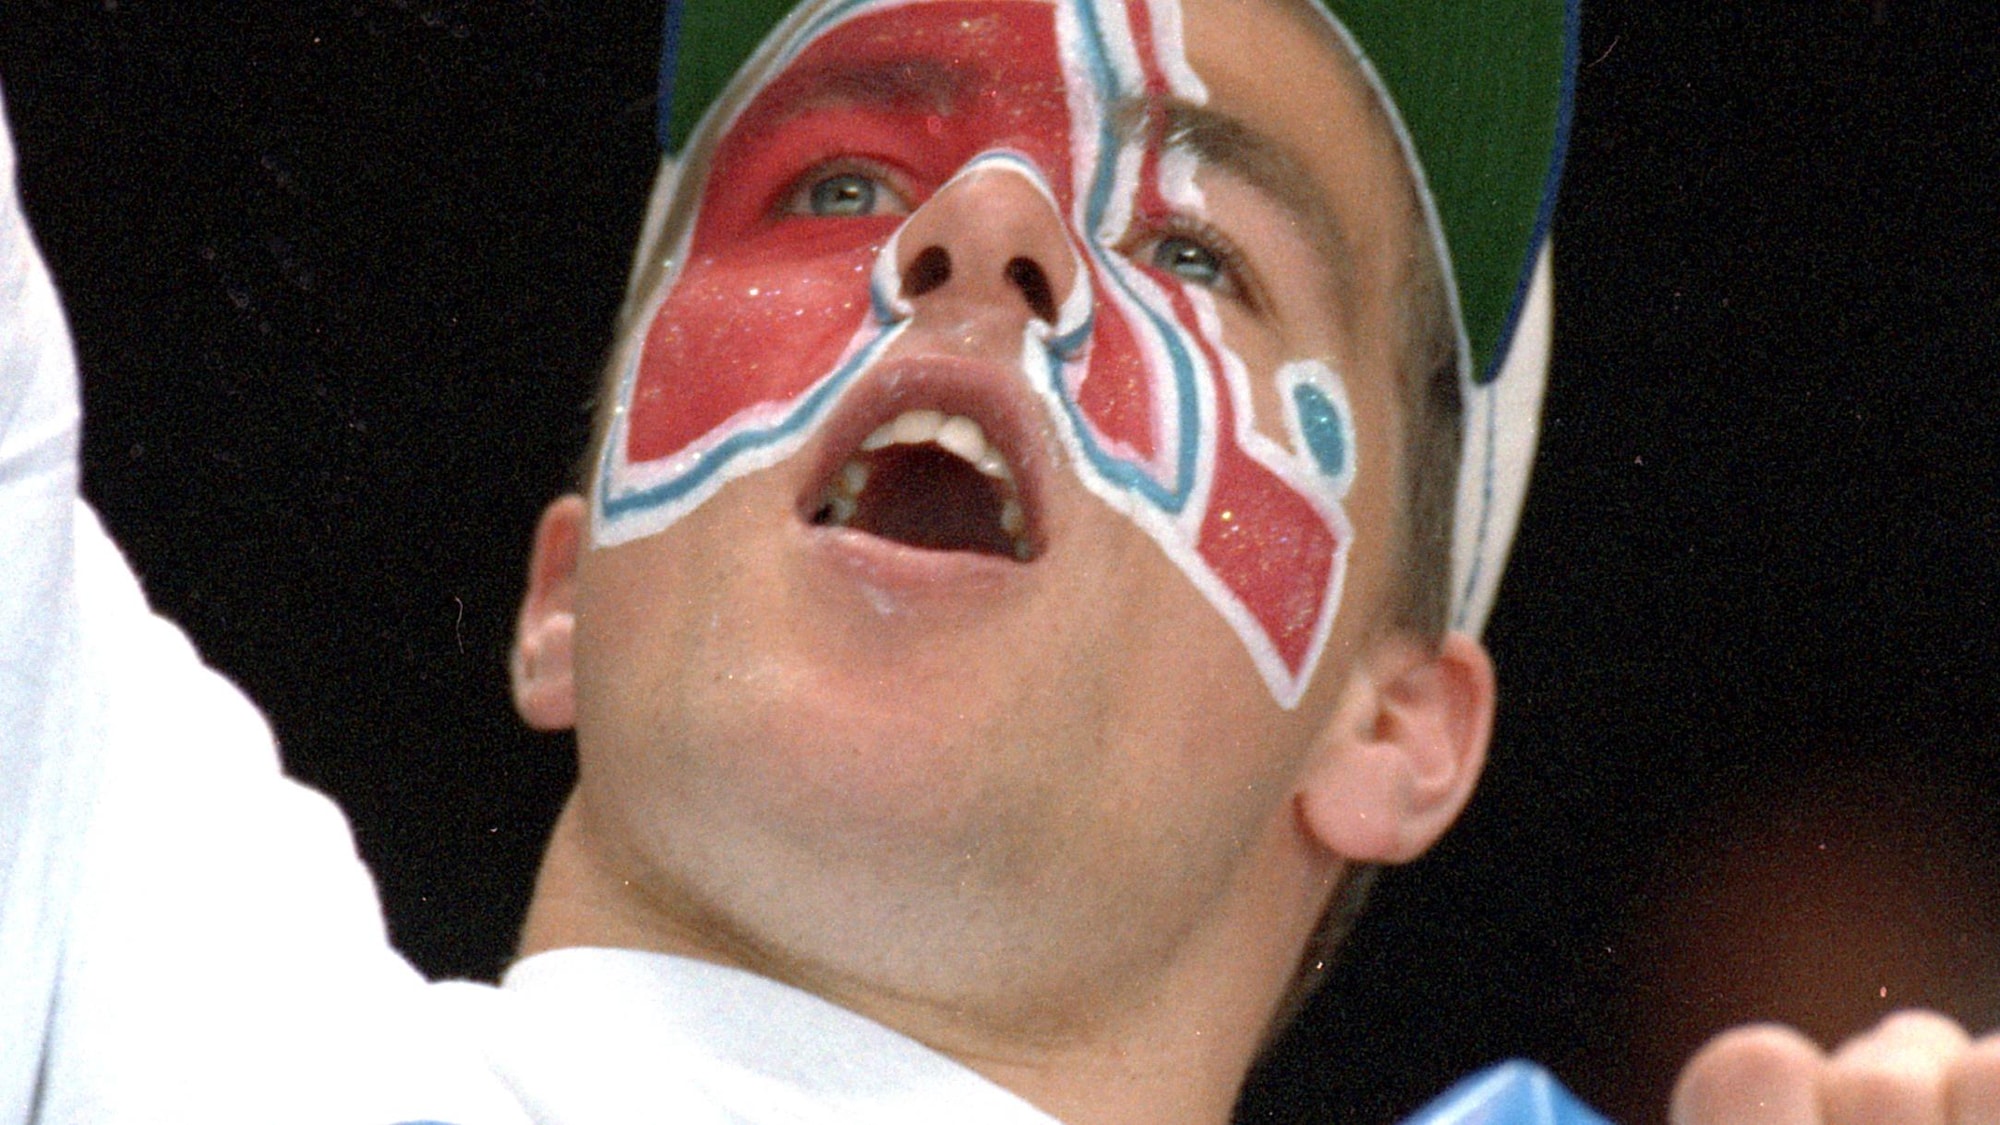 Un partisan affichant le logo des Nordiques peint sur son visage crie.